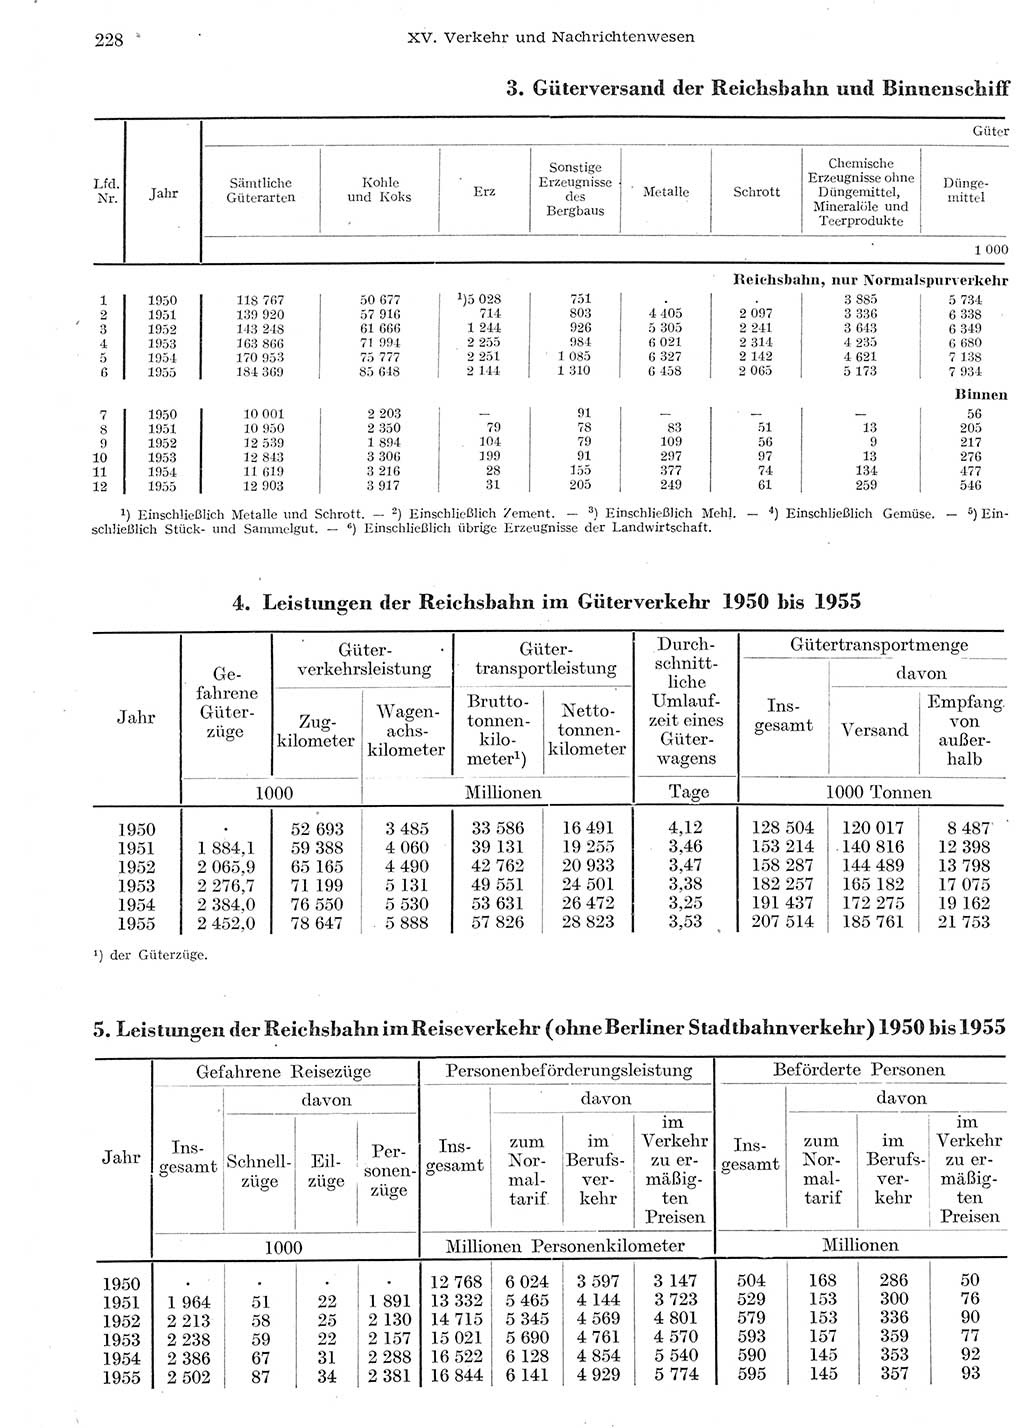 Statistisches Jahrbuch der Deutschen Demokratischen Republik (DDR) 1955, Seite 228 (Stat. Jb. DDR 1955, S. 228)